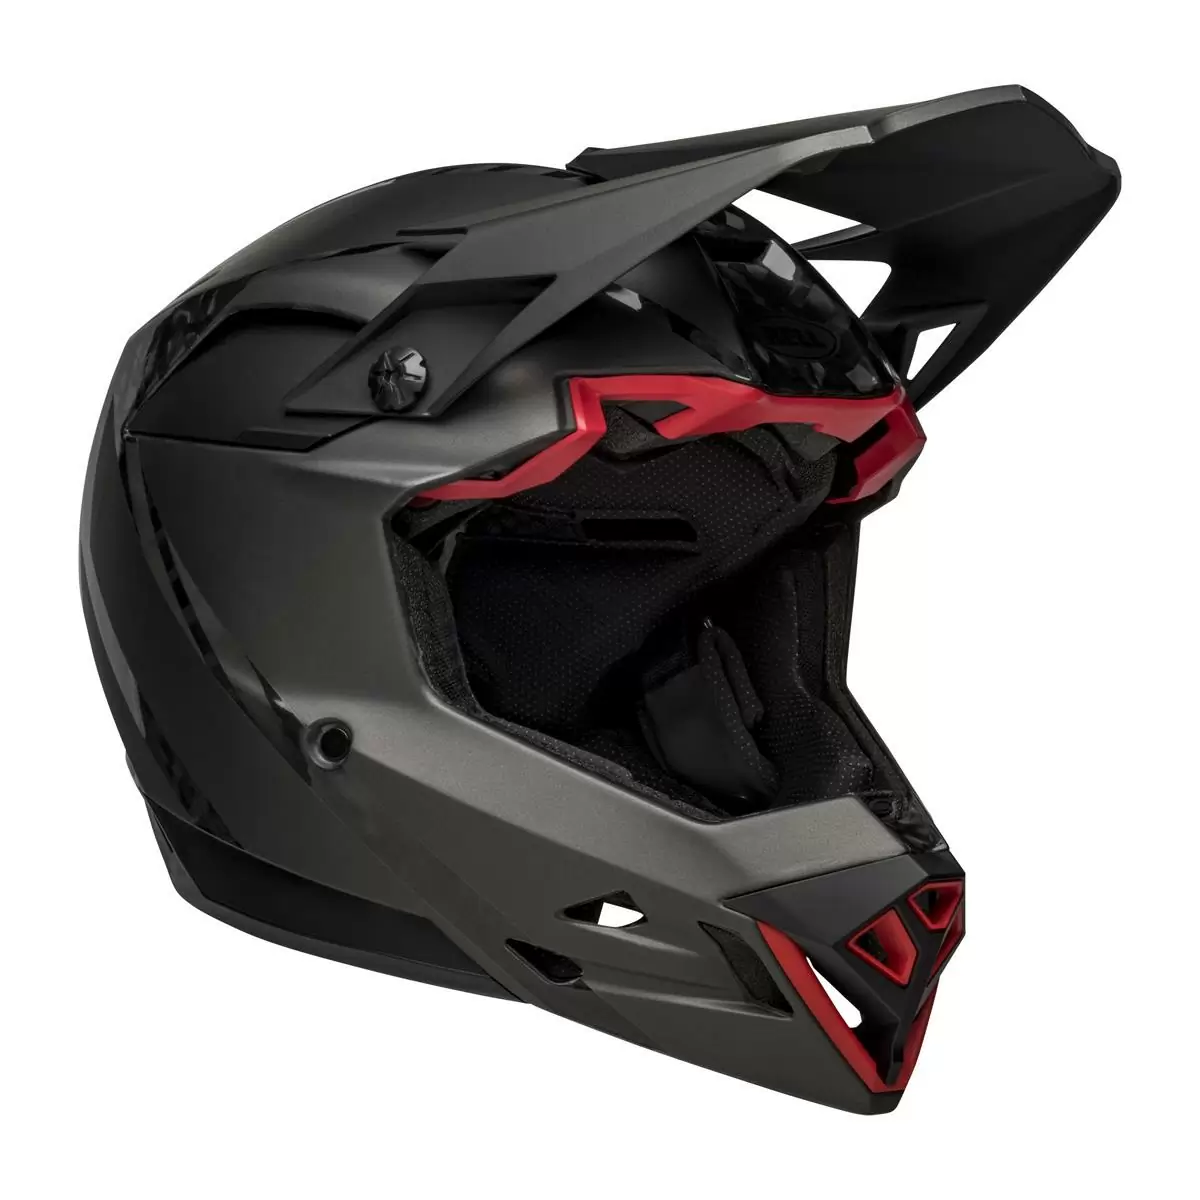 Full-10 Spherical Arise Matte / Gloss Black Carbon Full Face Helmet Size XS/S (51-55cm) - image